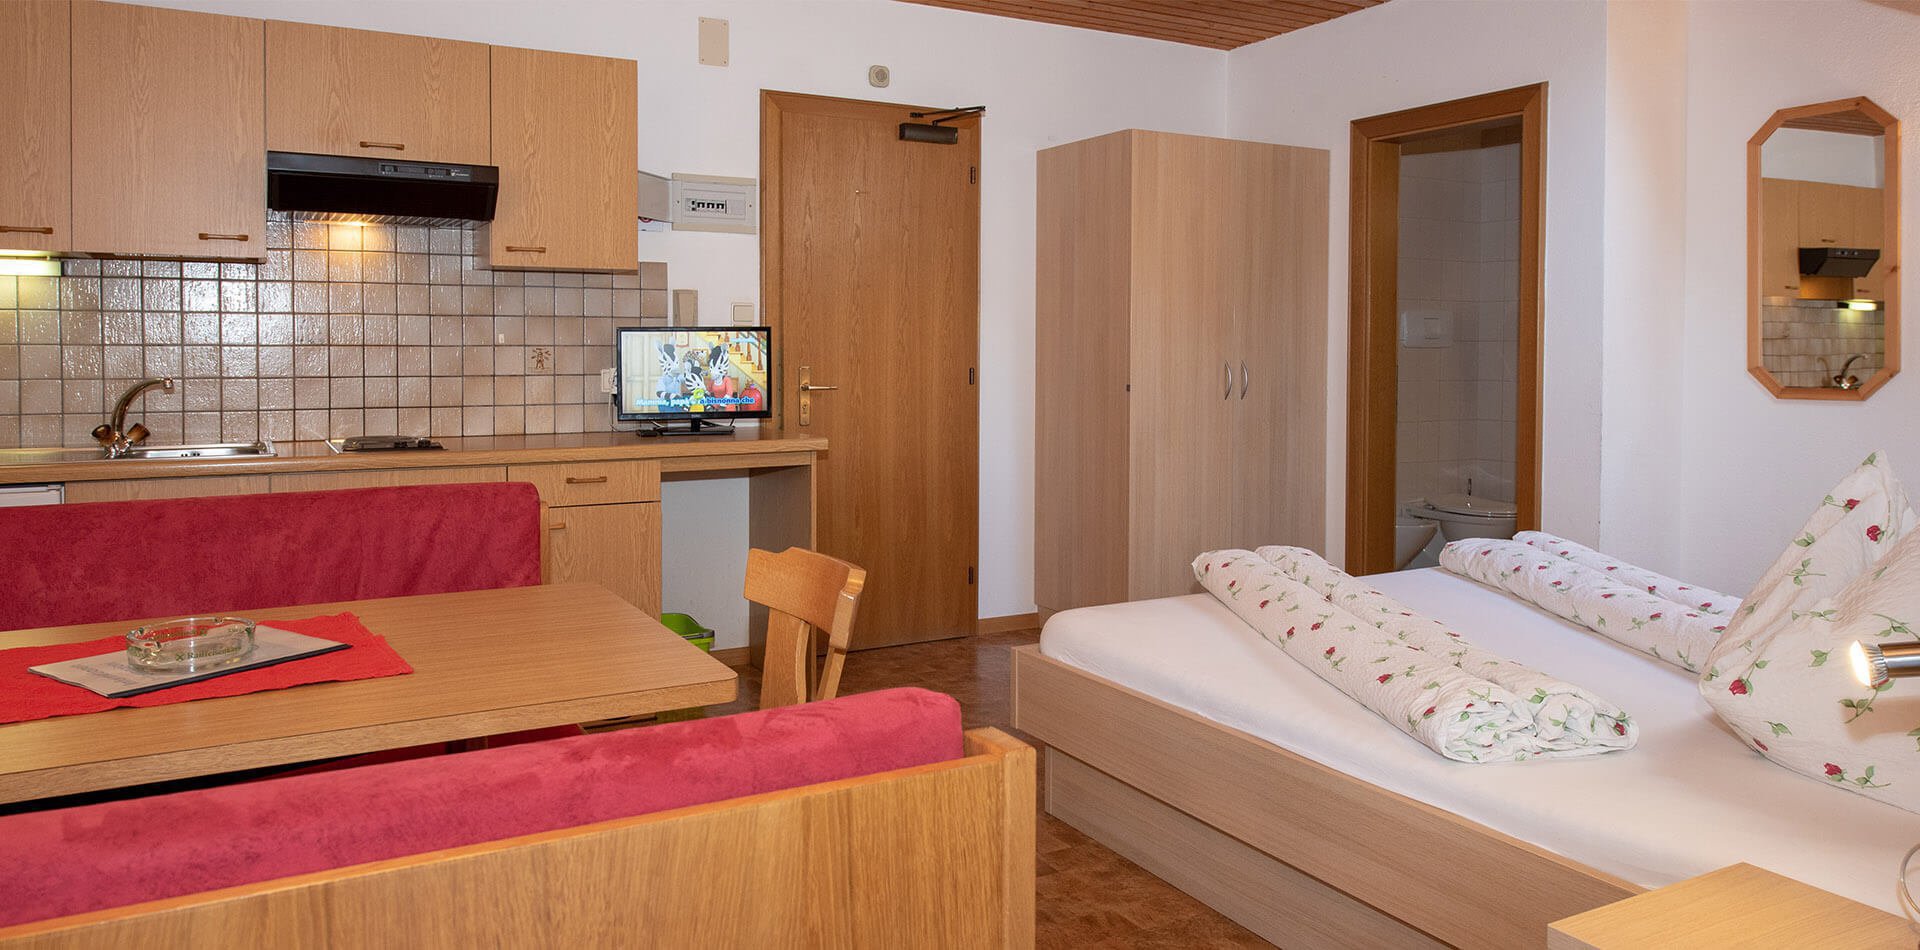 Einraumappartments im Ahrntal - Ferienwohnungen in Südtirol